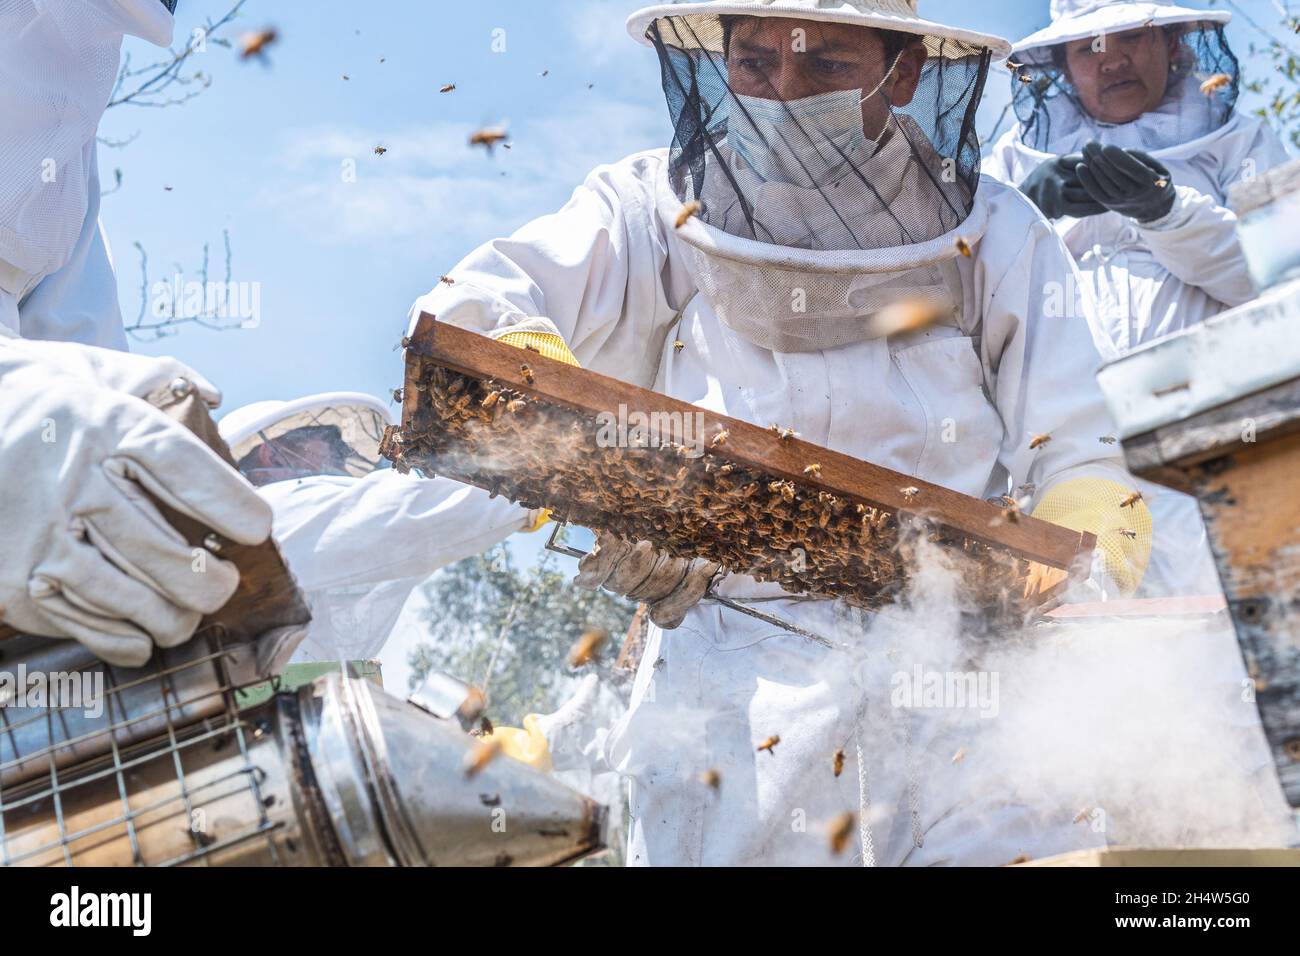 Grupo de apicultores cosecha miel en trajes especiales de seguridad usando humo para calmar las abejas Foto de stock